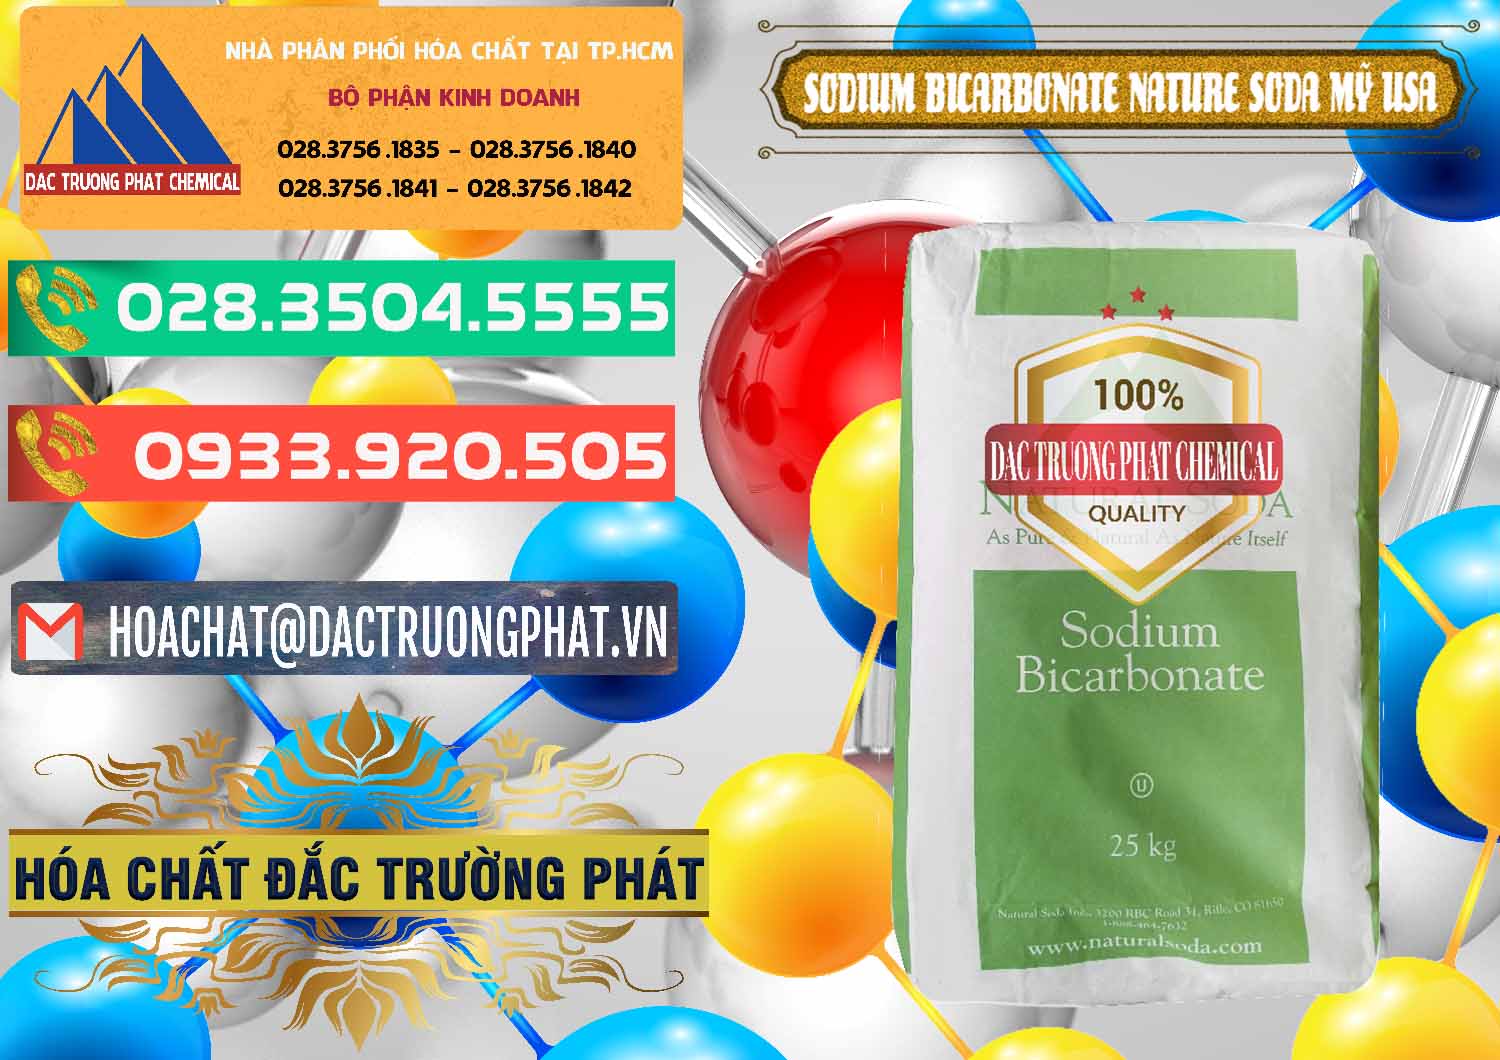 Công ty chuyên kinh doanh ( bán ) Sodium Bicarbonate – Bicar NaHCO3 Food Grade Nature Soda Mỹ USA - 0256 - Chuyên kinh doanh & cung cấp hóa chất tại TP.HCM - congtyhoachat.com.vn